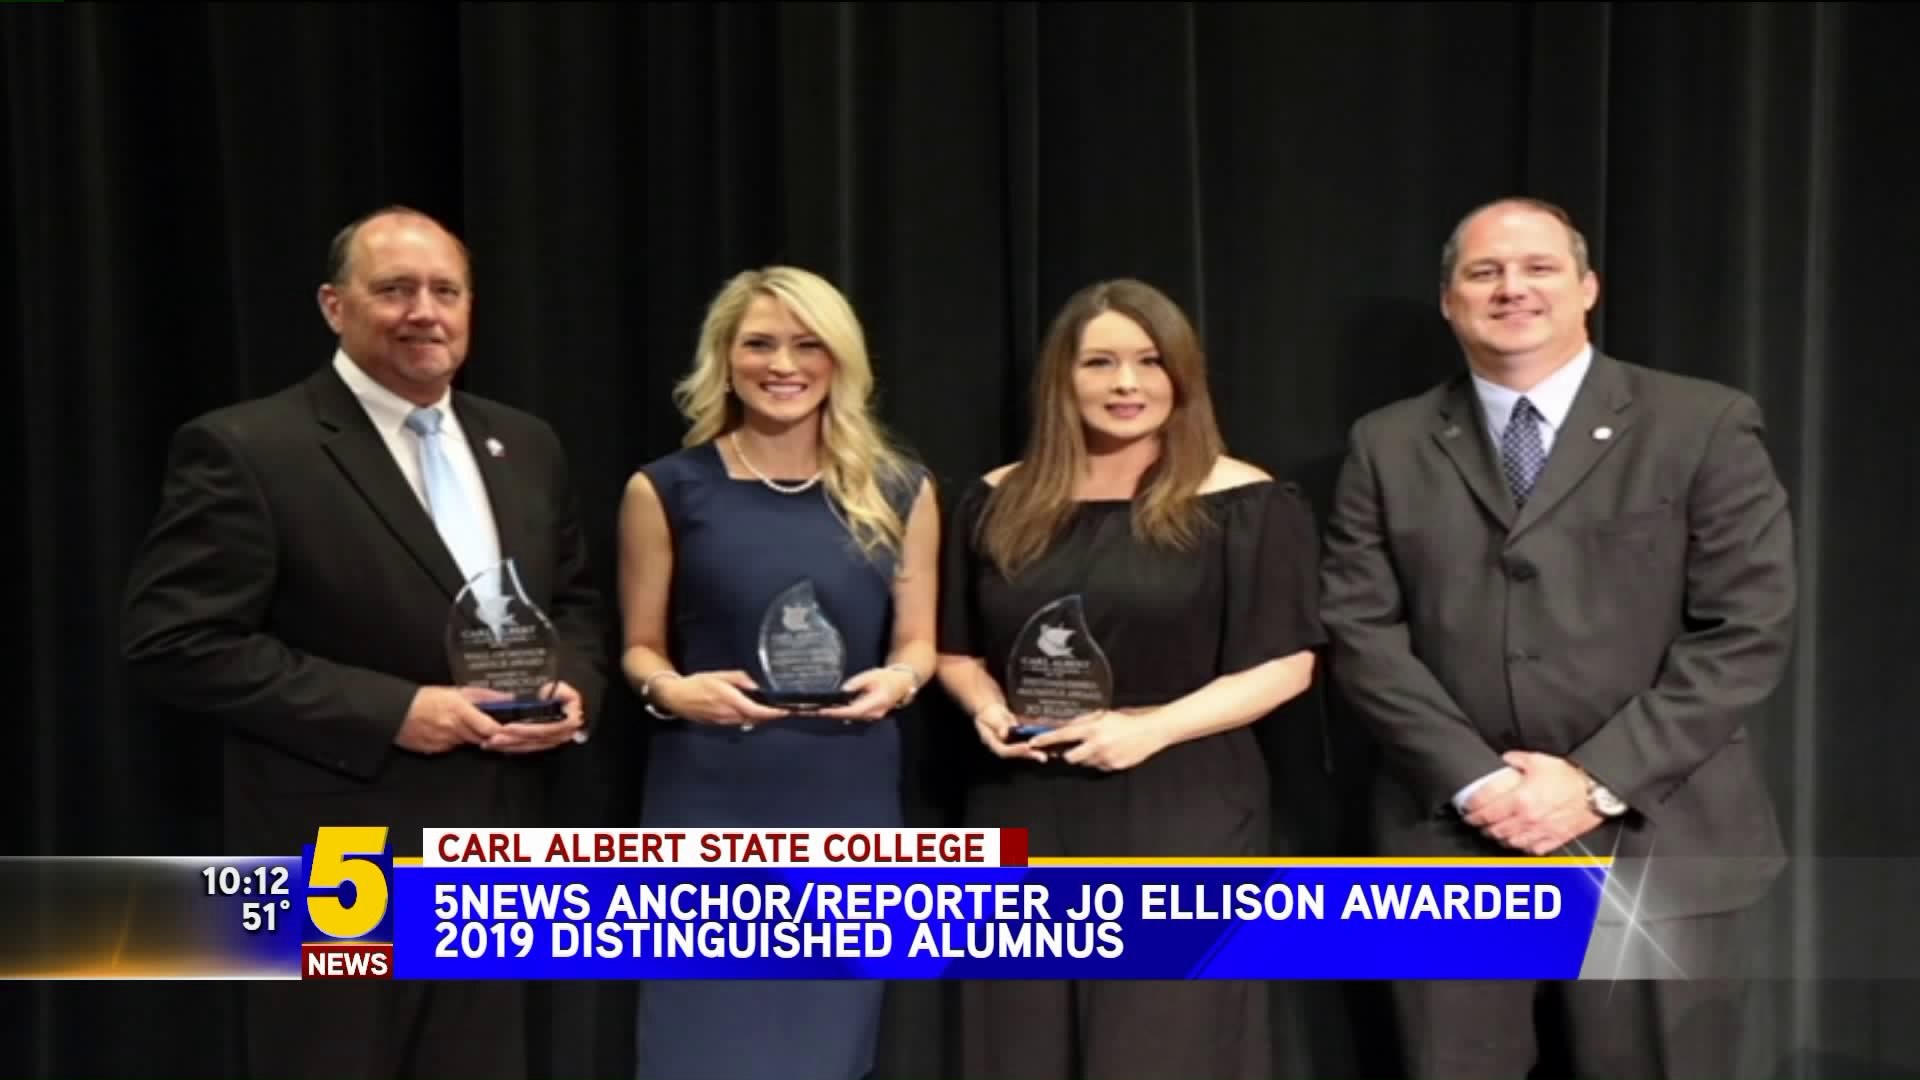 5NEWS` Jo Ellison Awarded 2019 Distinguished Alumnus Award